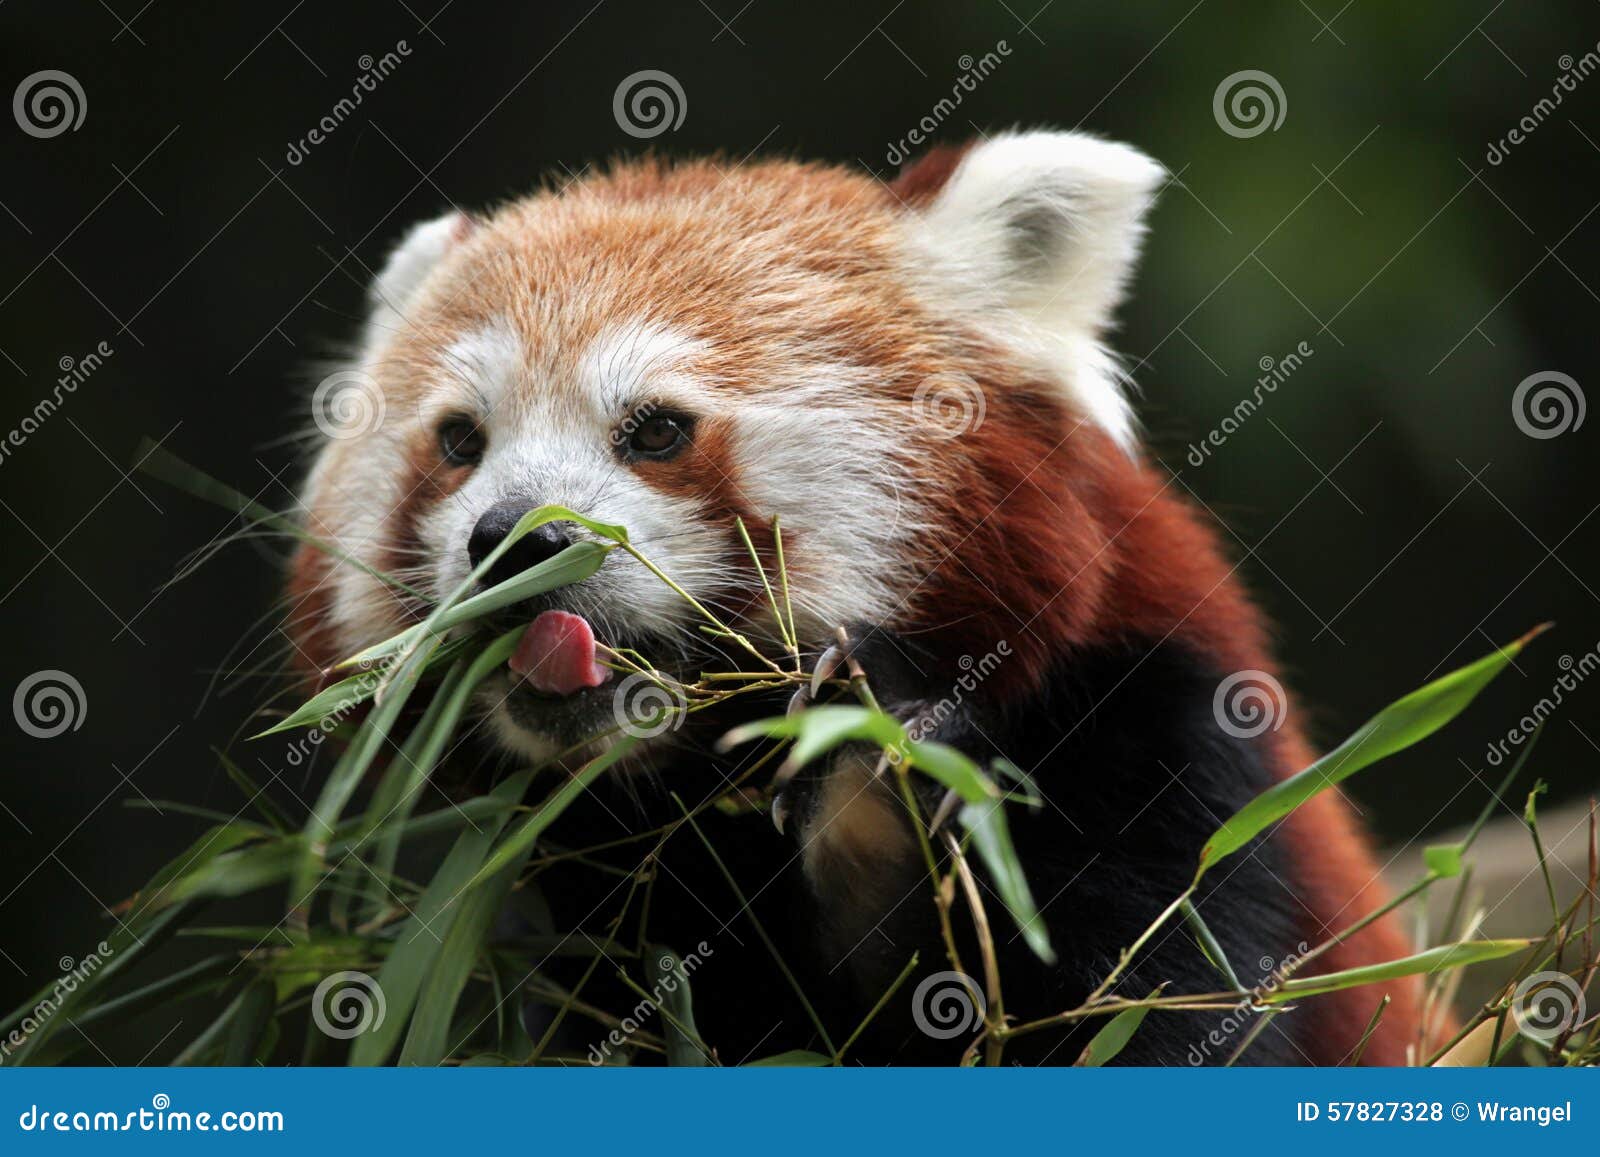 red panda (ailurus fulgens).